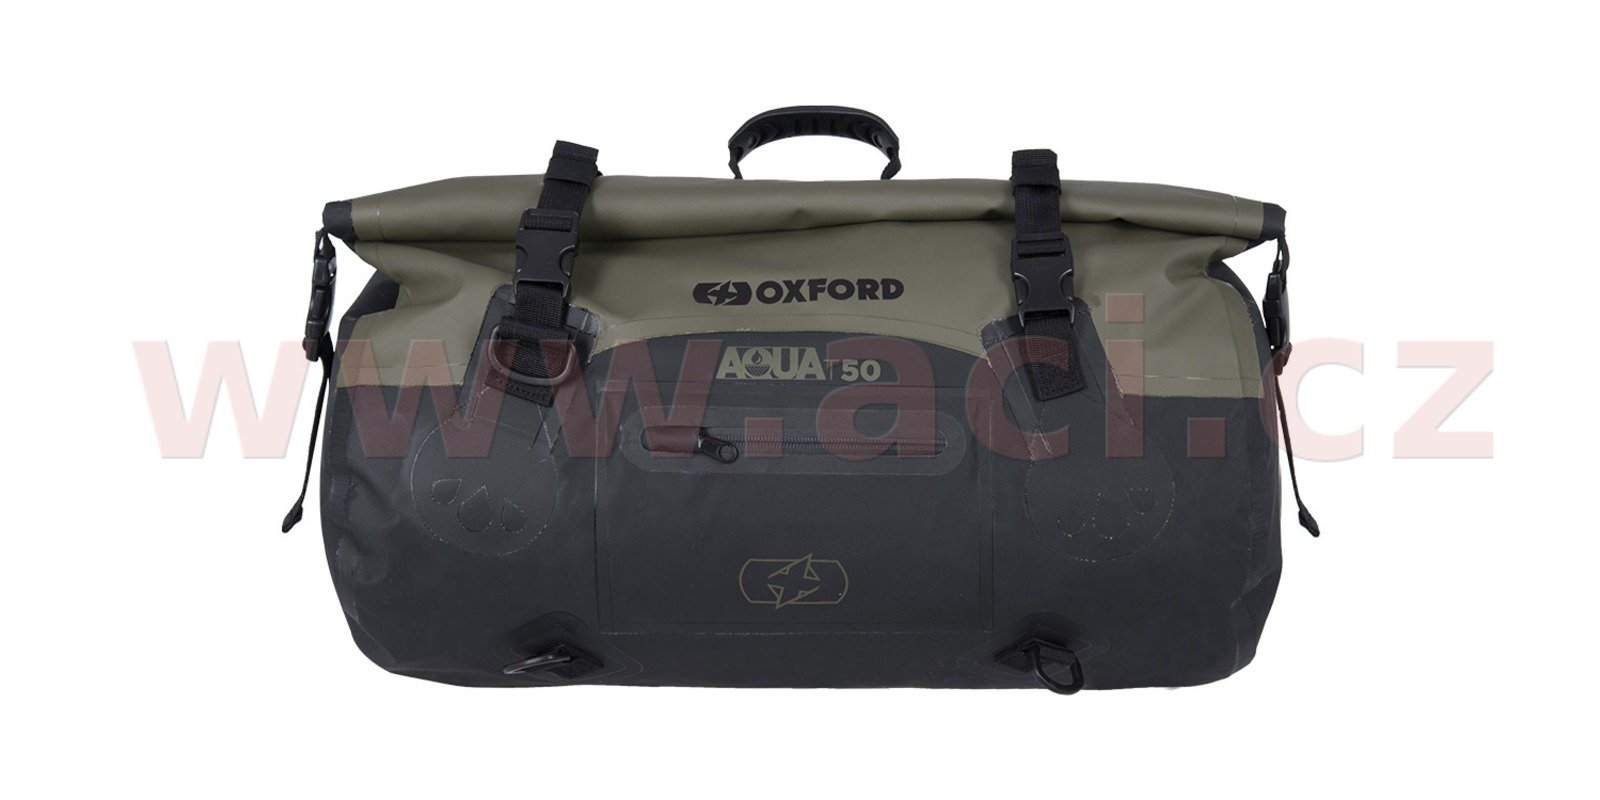 Obrázek produktu vodotěsný vak Aqua T-50 Roll Bag, OXFORD (khaki/černý, objem 50 l) OL402